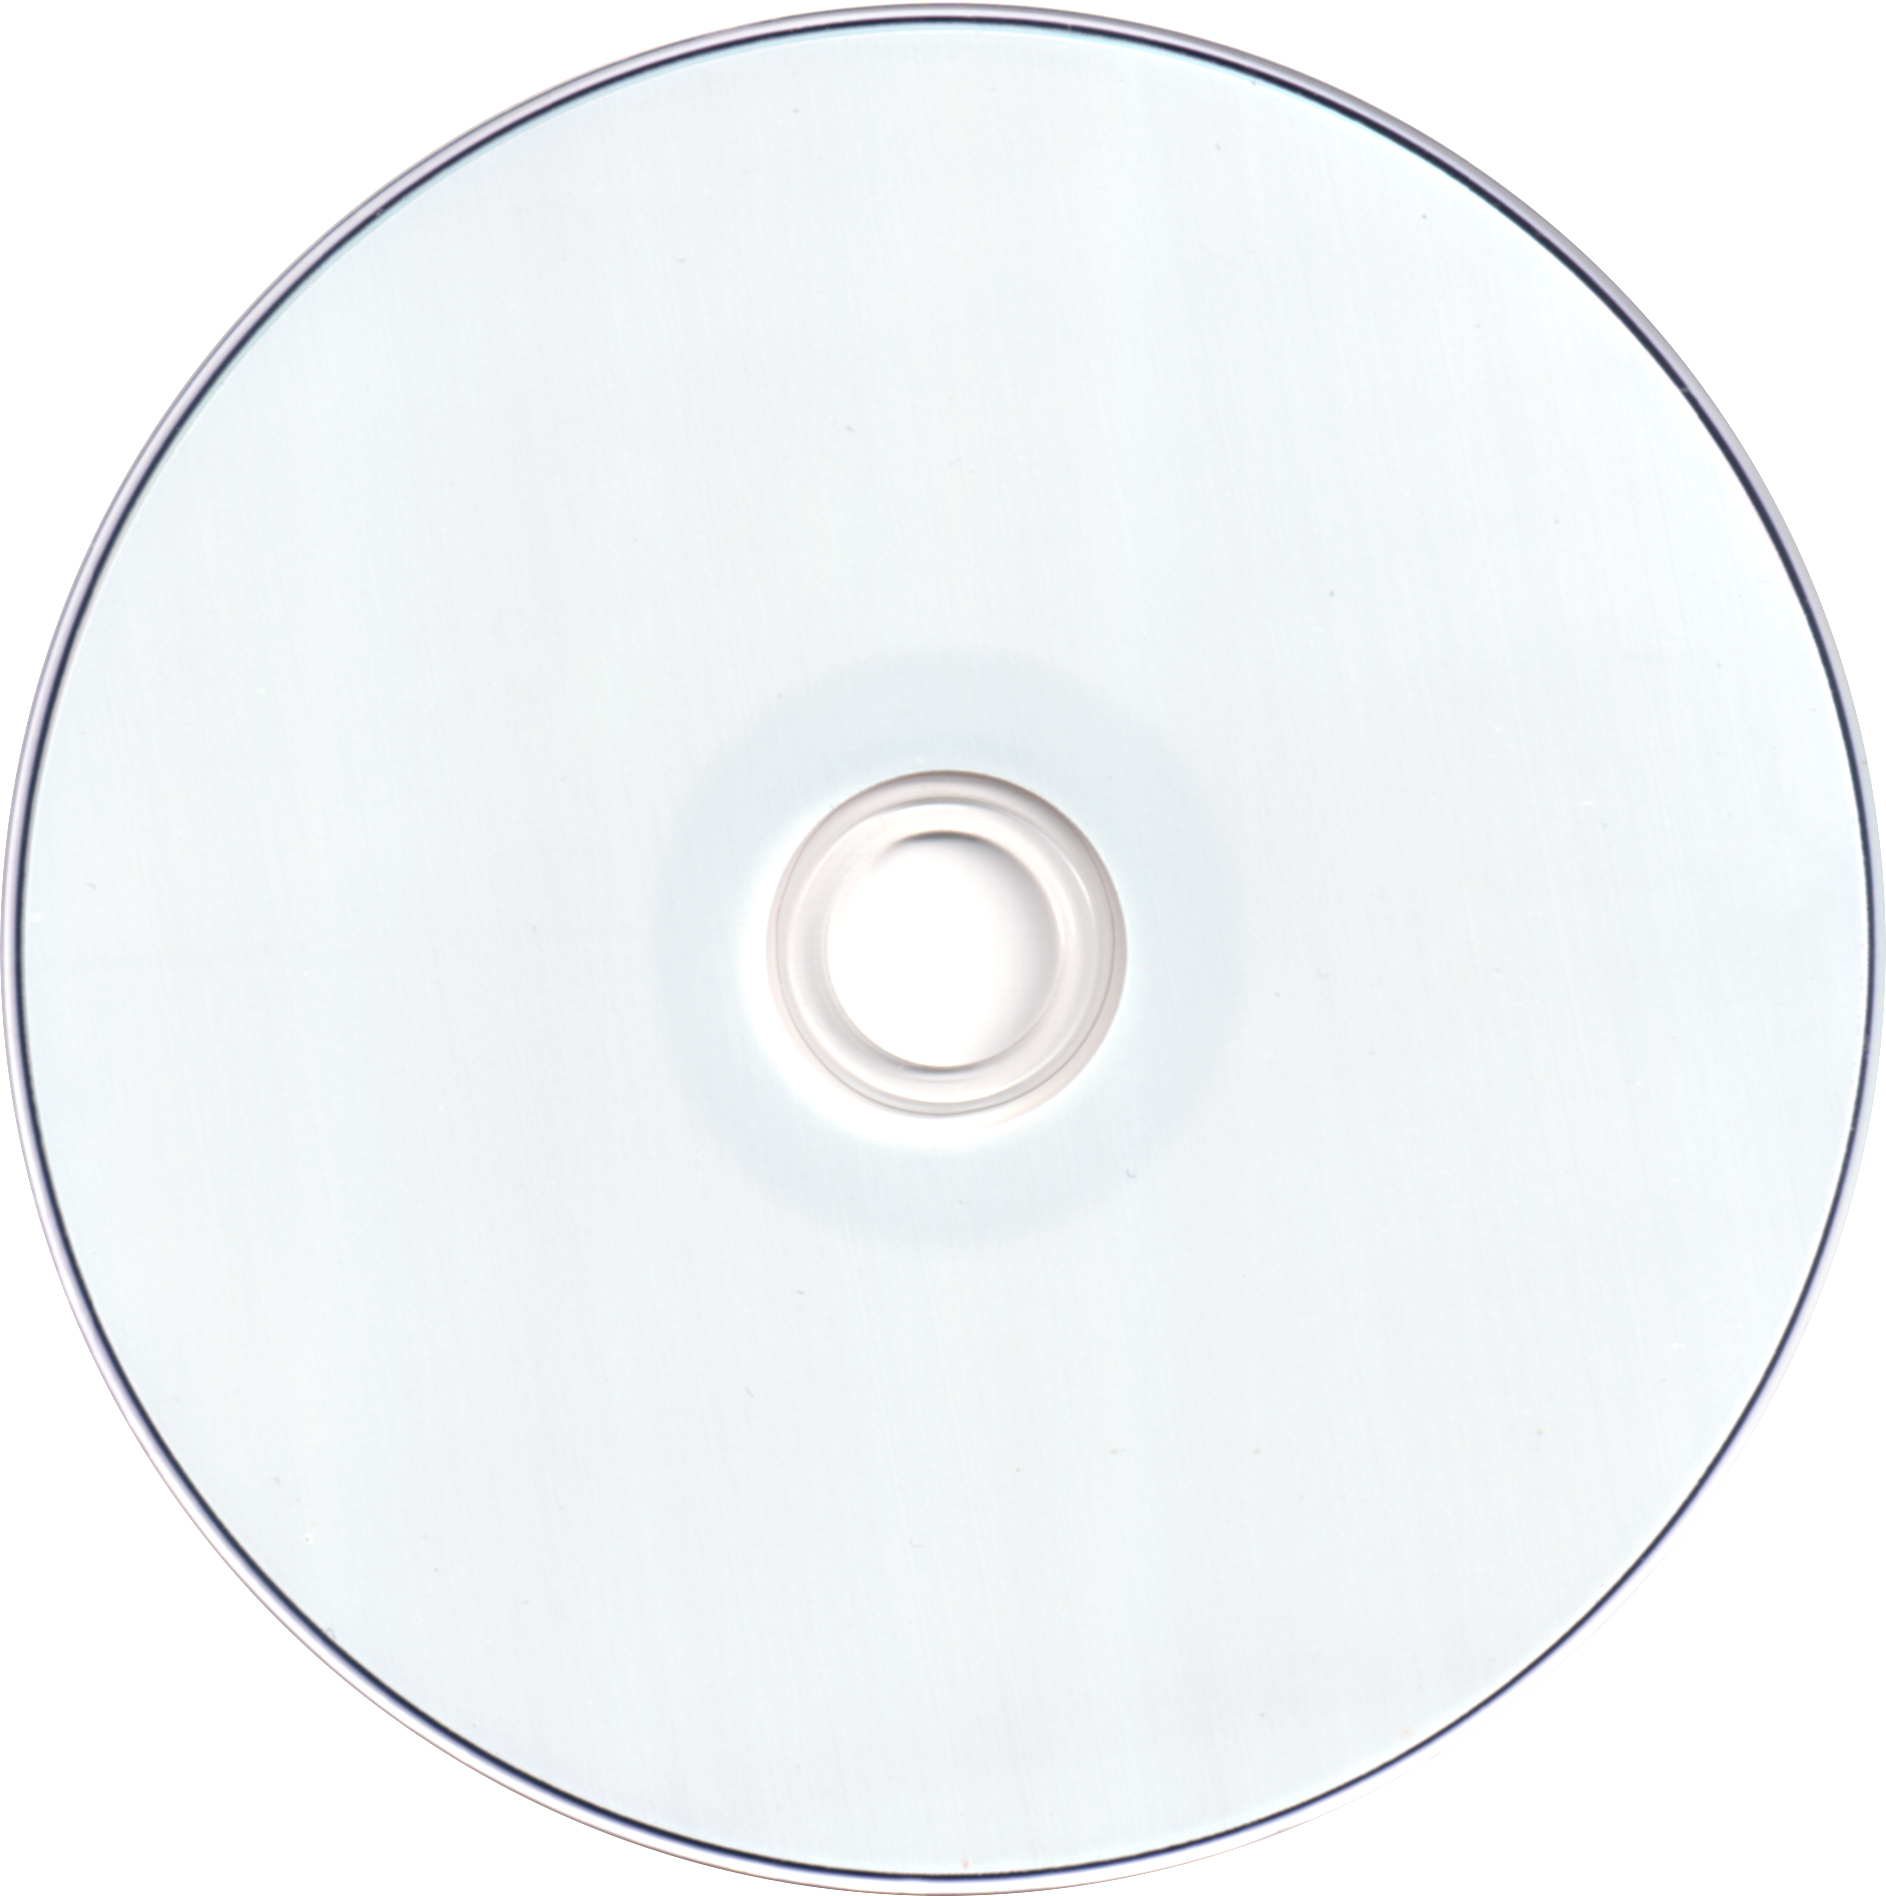 Диск CMC CD-R 80 52x. CMC Magnetics Corporation диски.